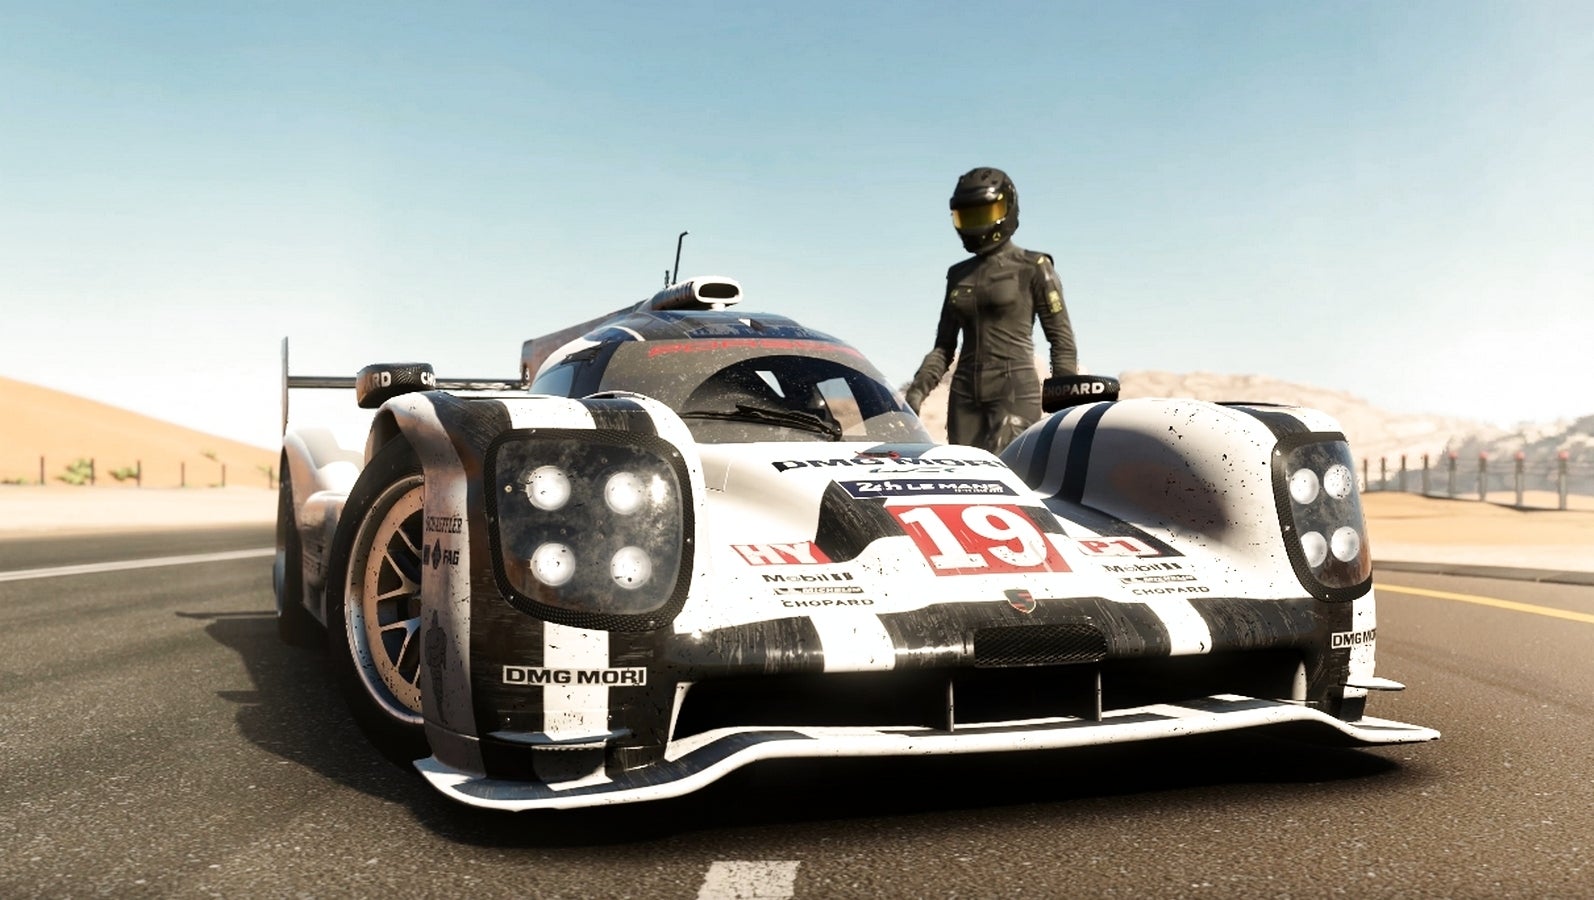 Bilder zu Forza Motorsport 7 wird ab September nicht mehr verkauft - jetzt günstig zugreifen!